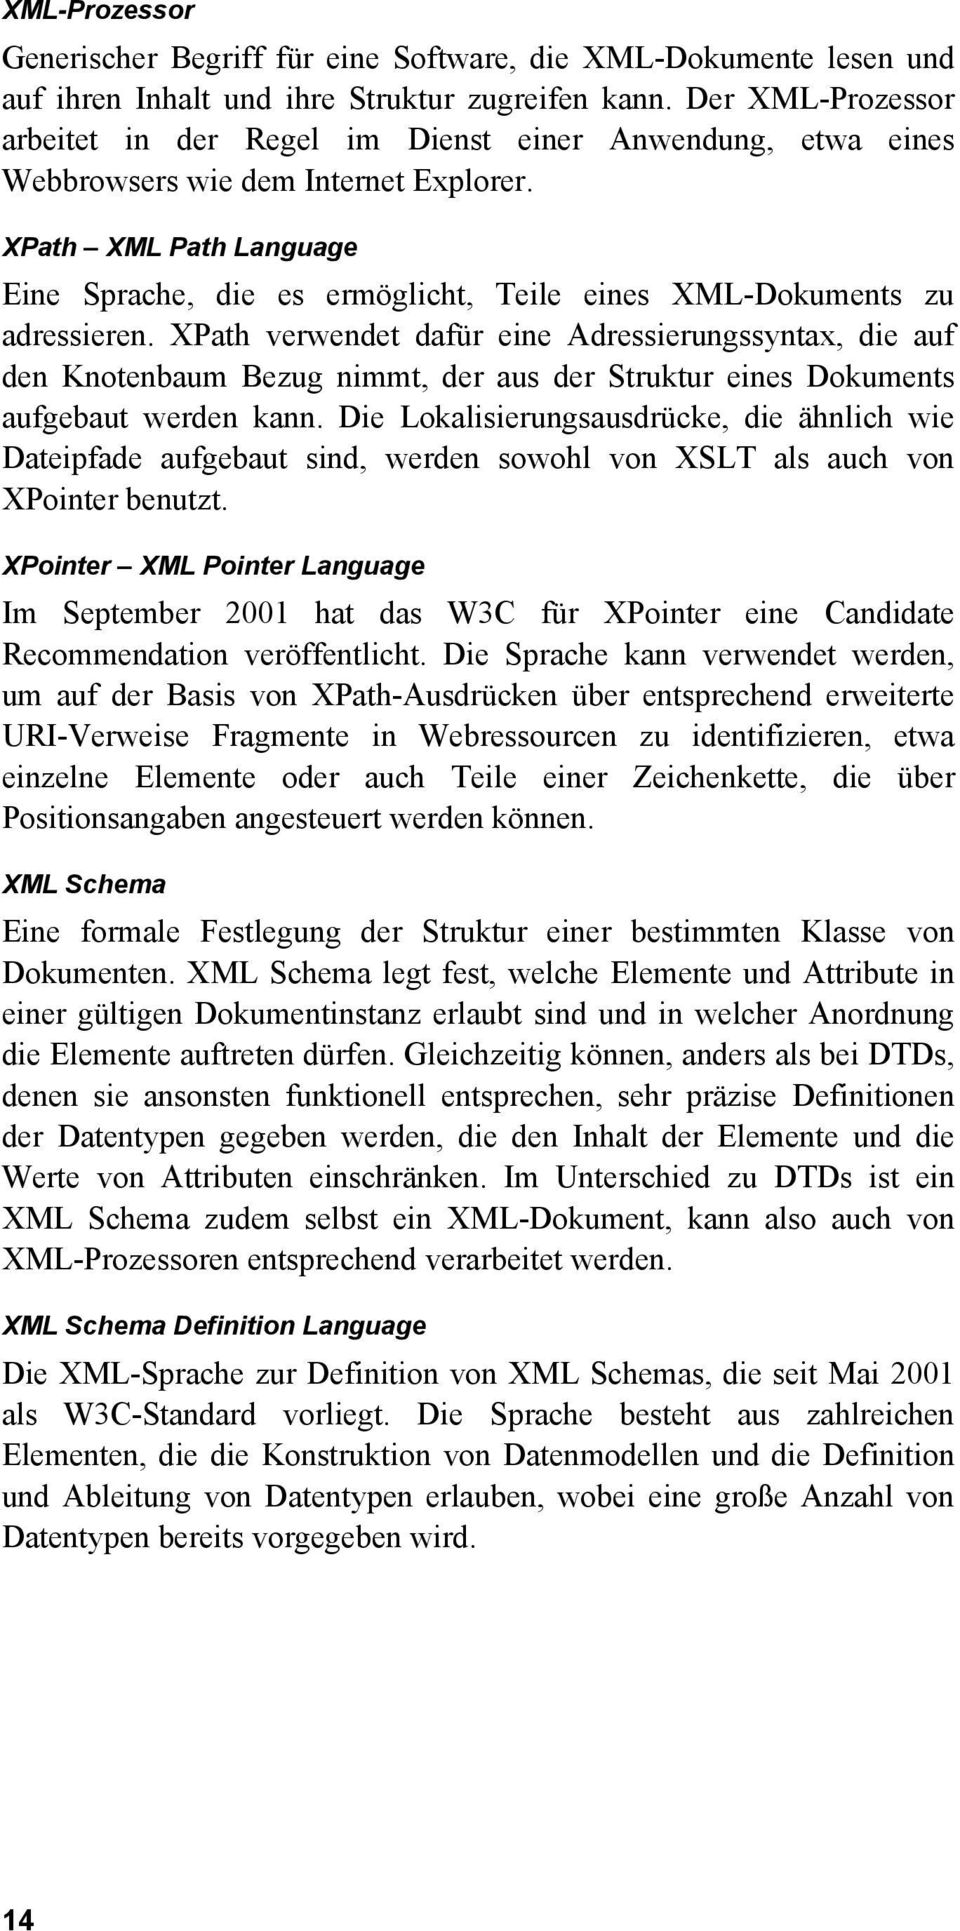 XPath XML Path Language Eine Sprache, die es ermöglicht, Teile eines XML-Dokuments zu adressieren.